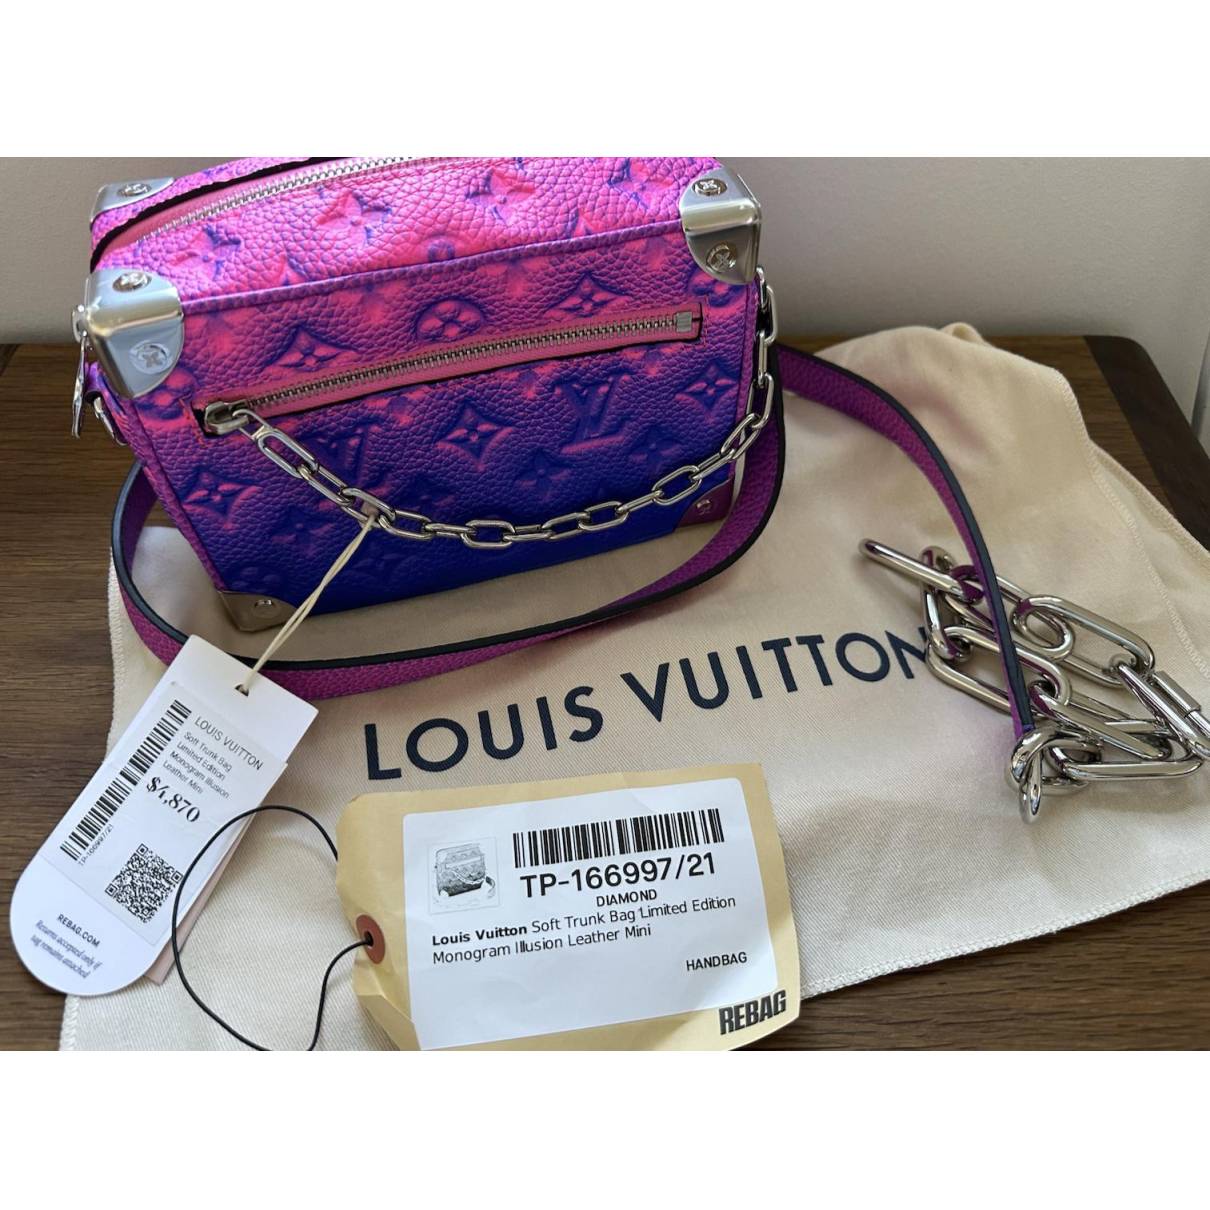 Louis Vuitton Soft Trunk Bag Monogram Taurillon Leather Mini Auction